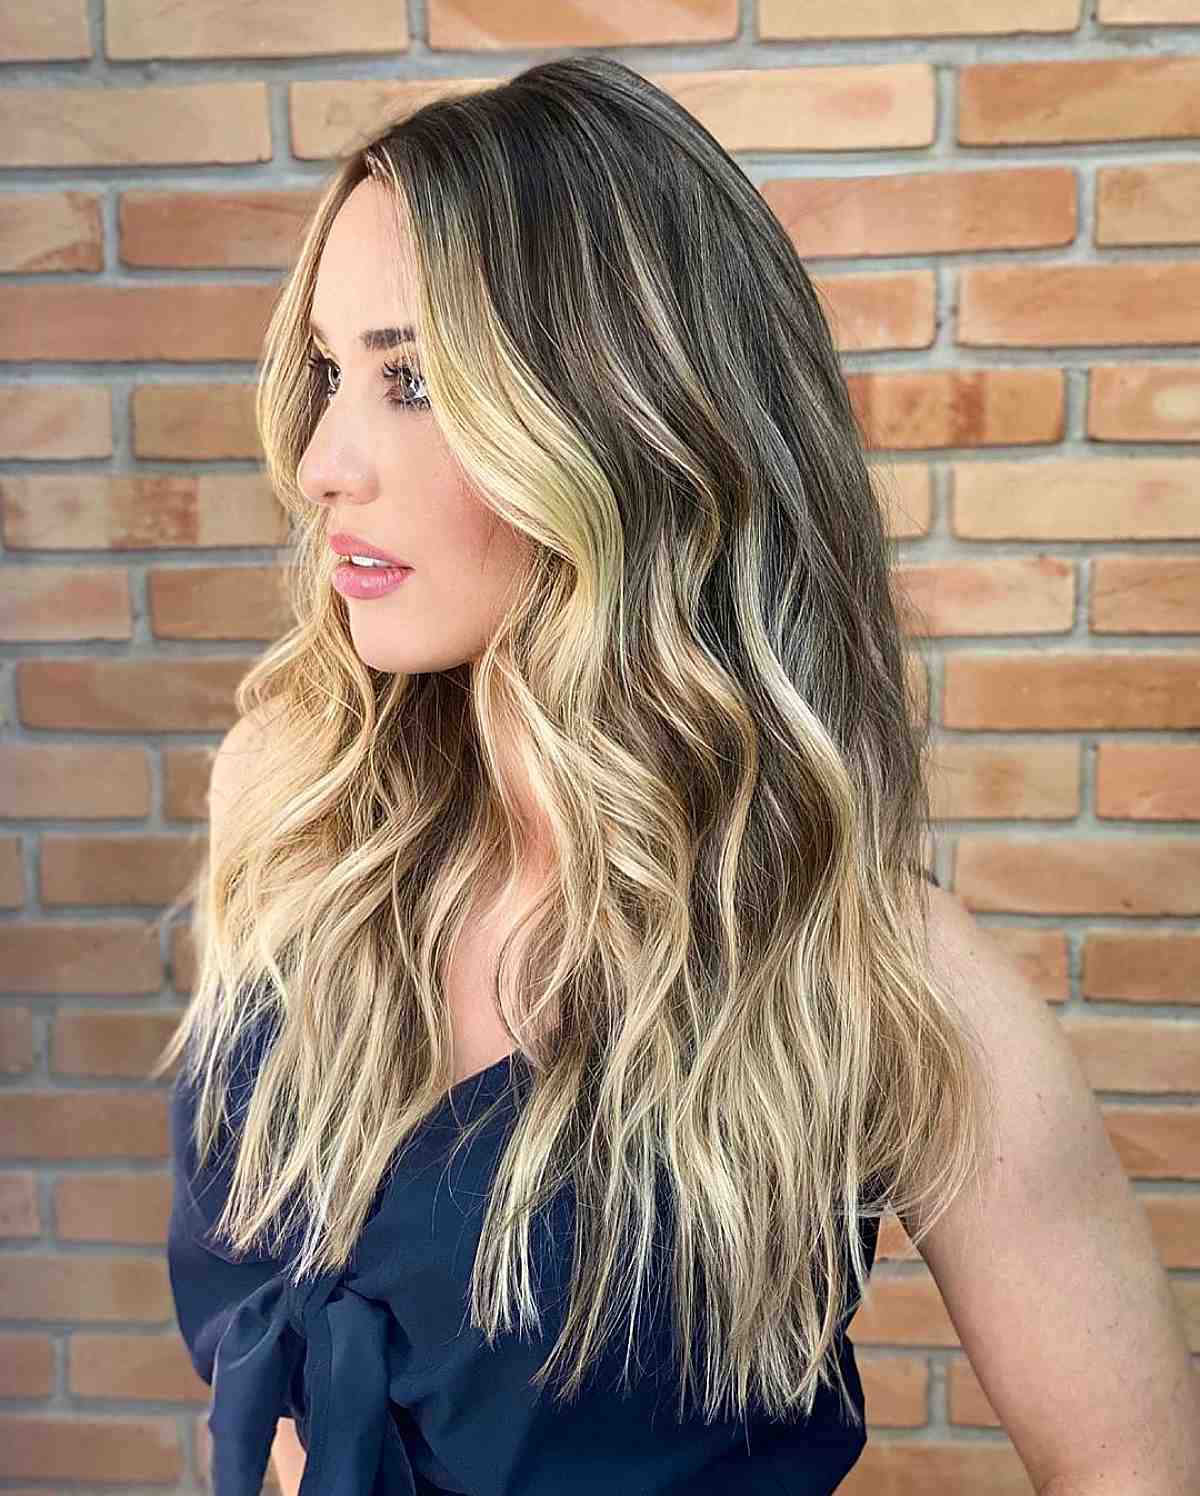 Bilde av lysebrunt hår med blonde høydepunkter